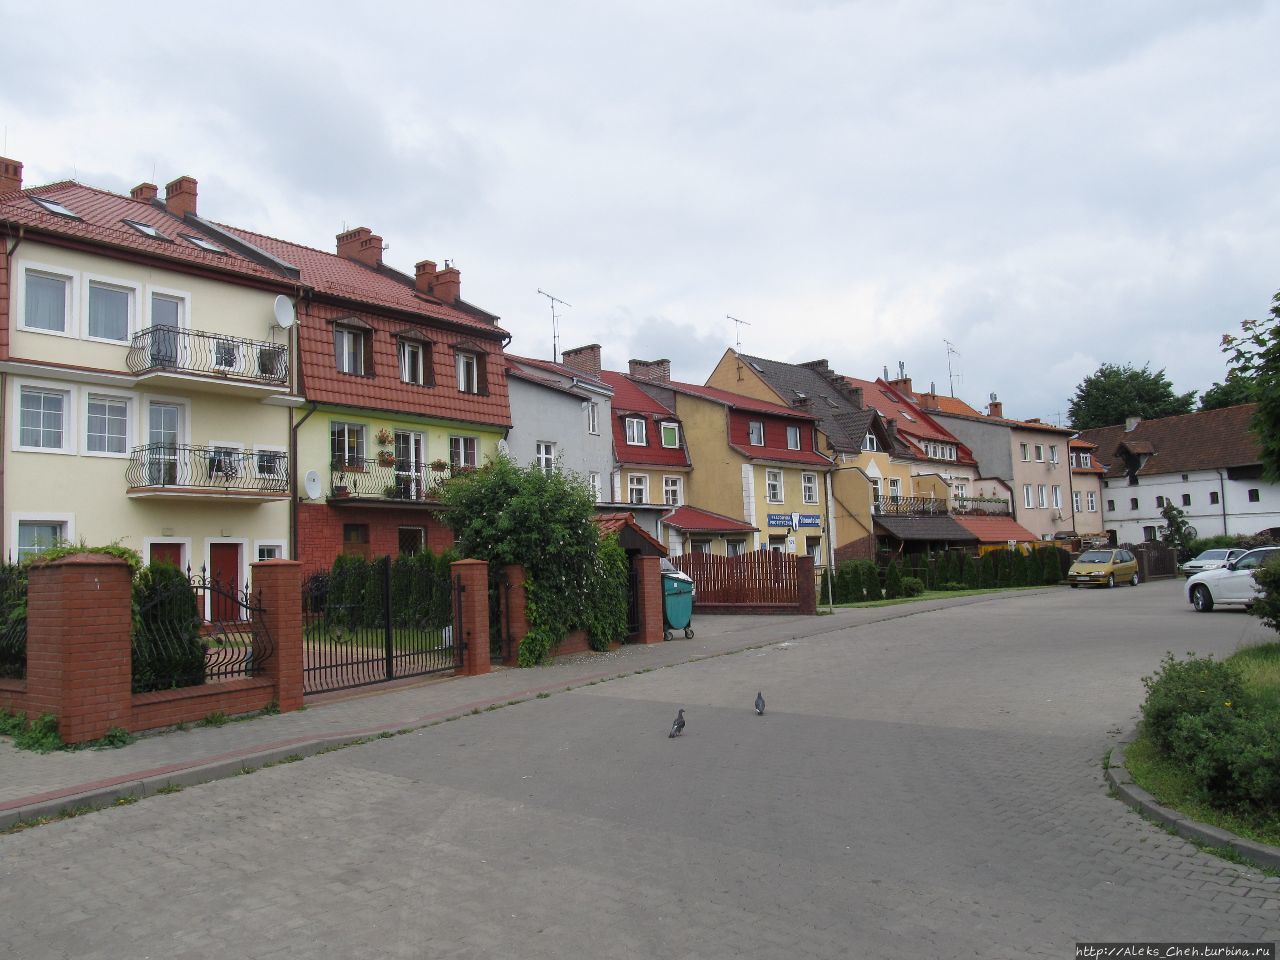 На земле бартов: поездка в Бартошице Бартошице, Польша